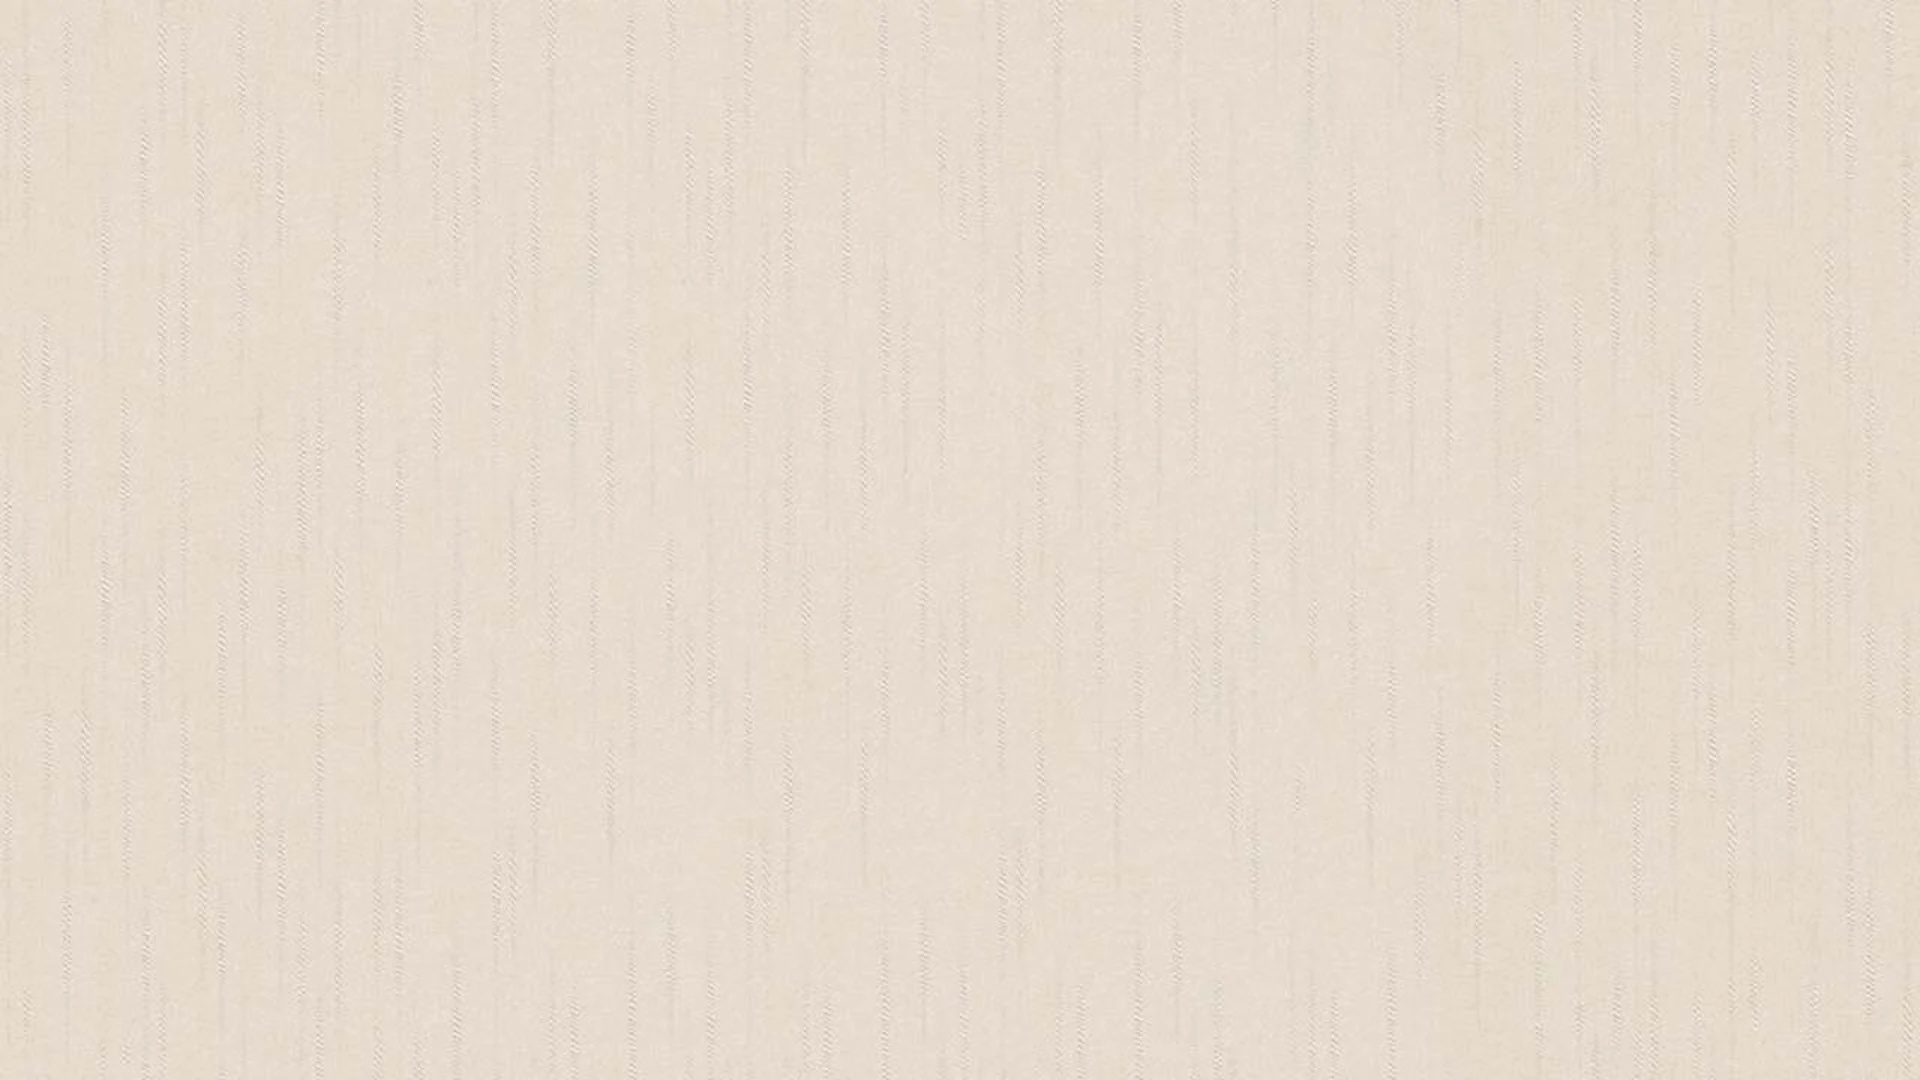 Vinyl wallpaper cream classic retro stripes style guide classic 2021 914